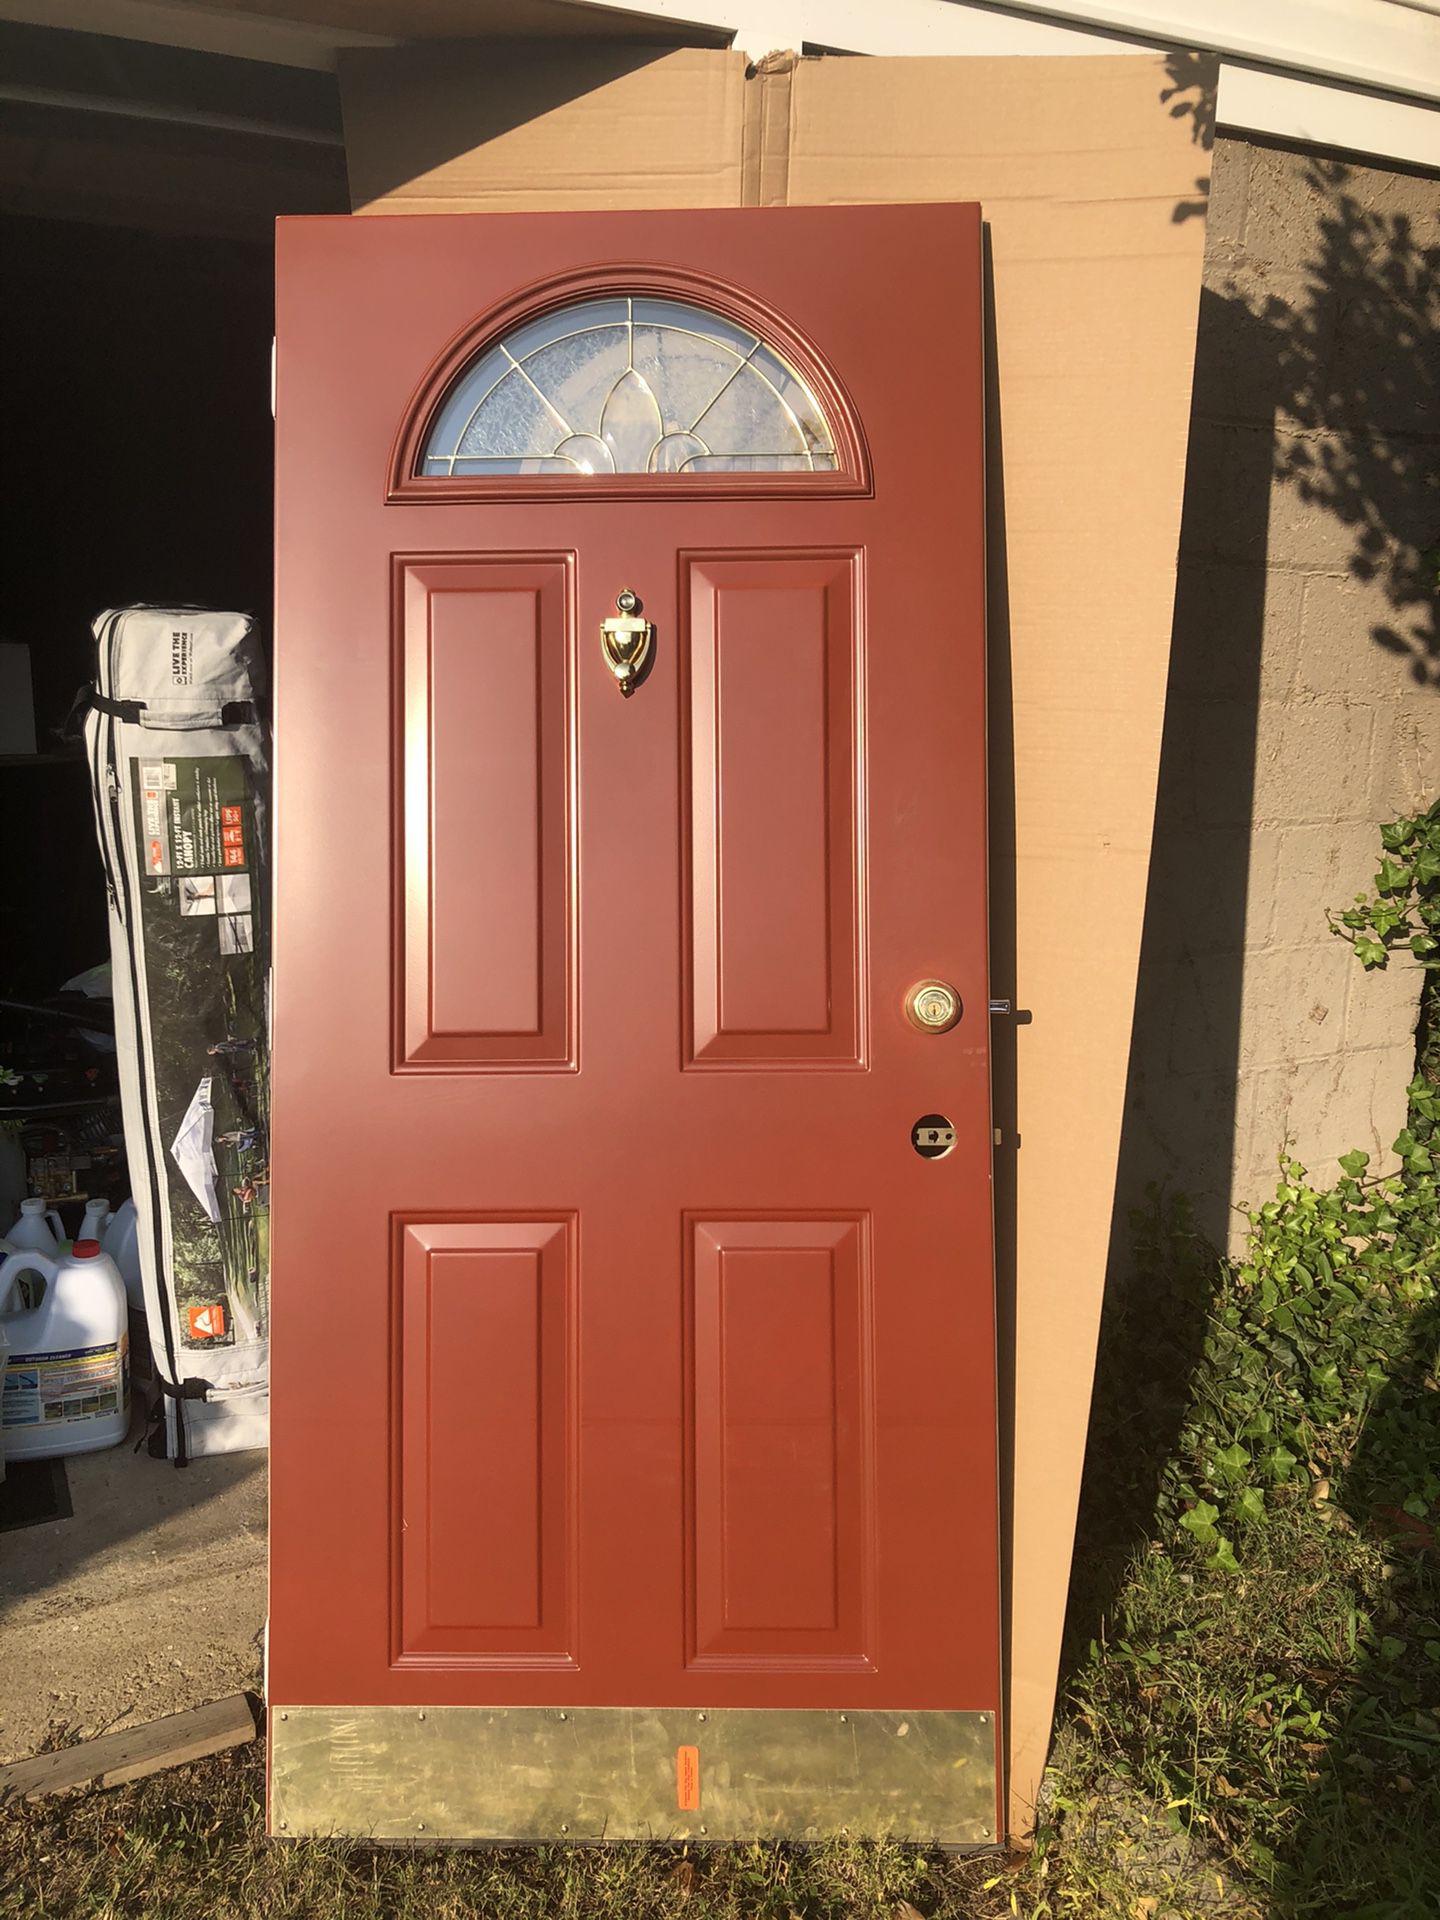 Beautiful red door